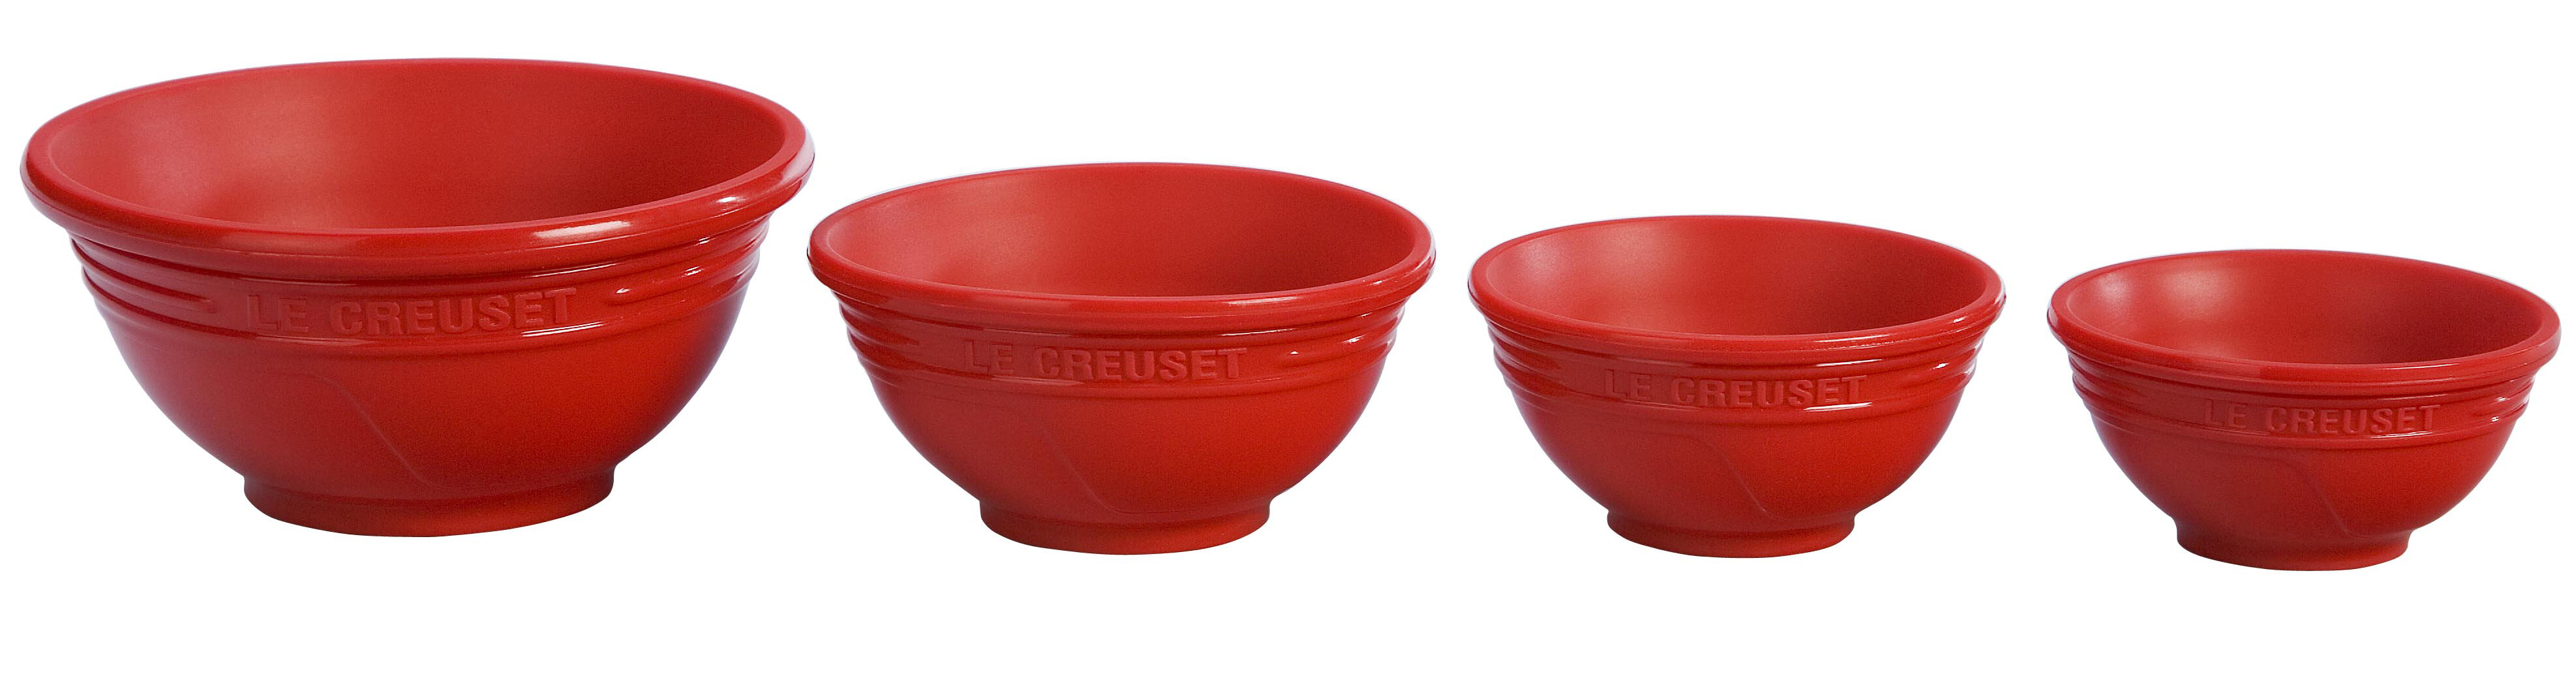 https://assets.wfcdn.com/im/79918485/compr-r85/5575/55753600/le-creuset-silicone-4-piece-prep-bowl-set.jpg